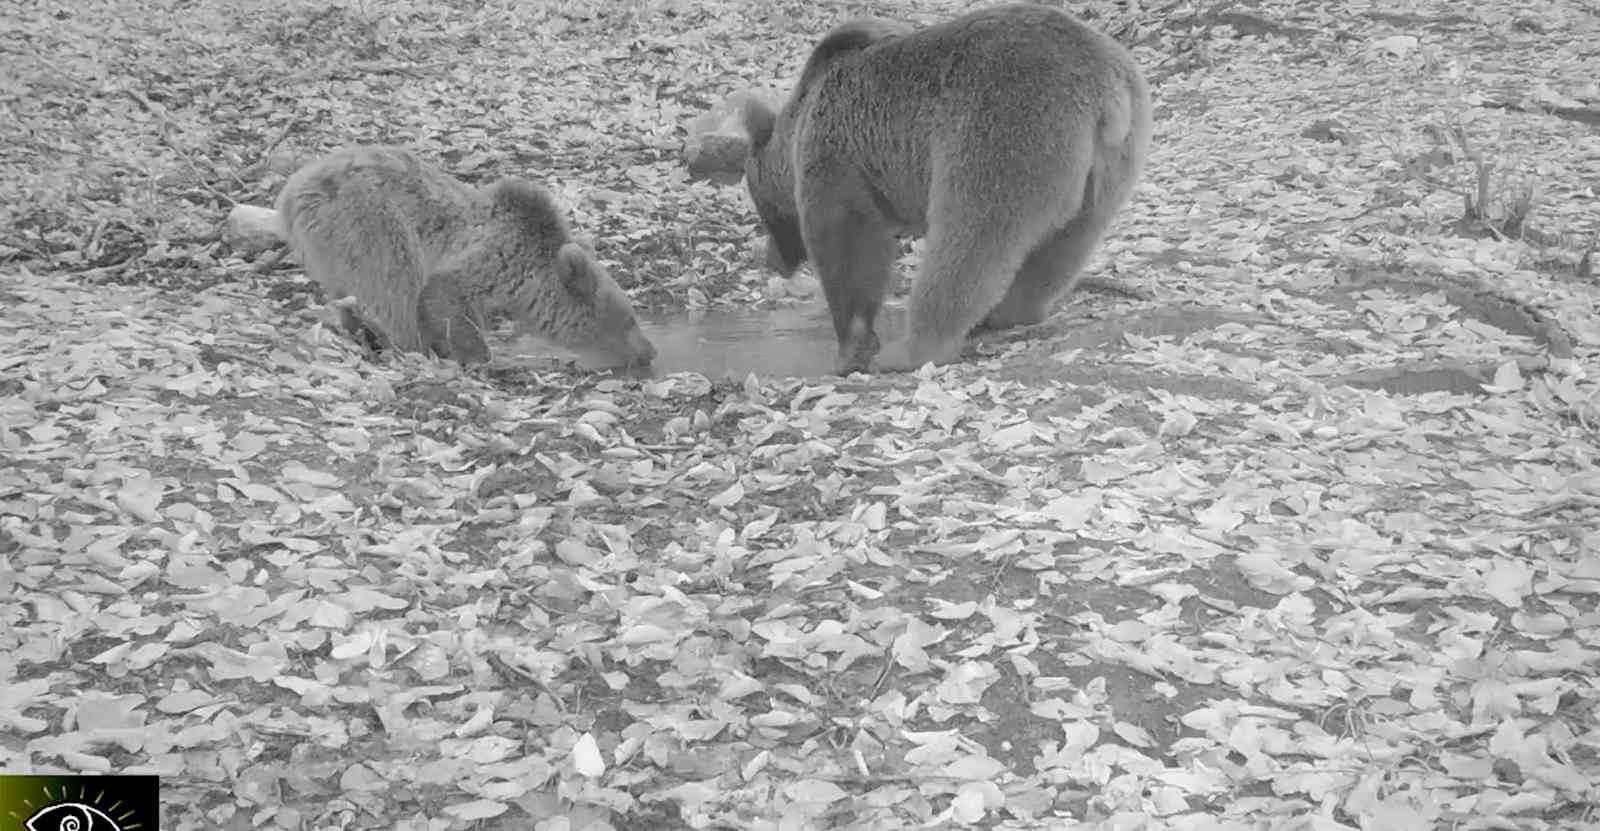 Boz ayılar Uludağ’da fotokapana böyle yakalandı